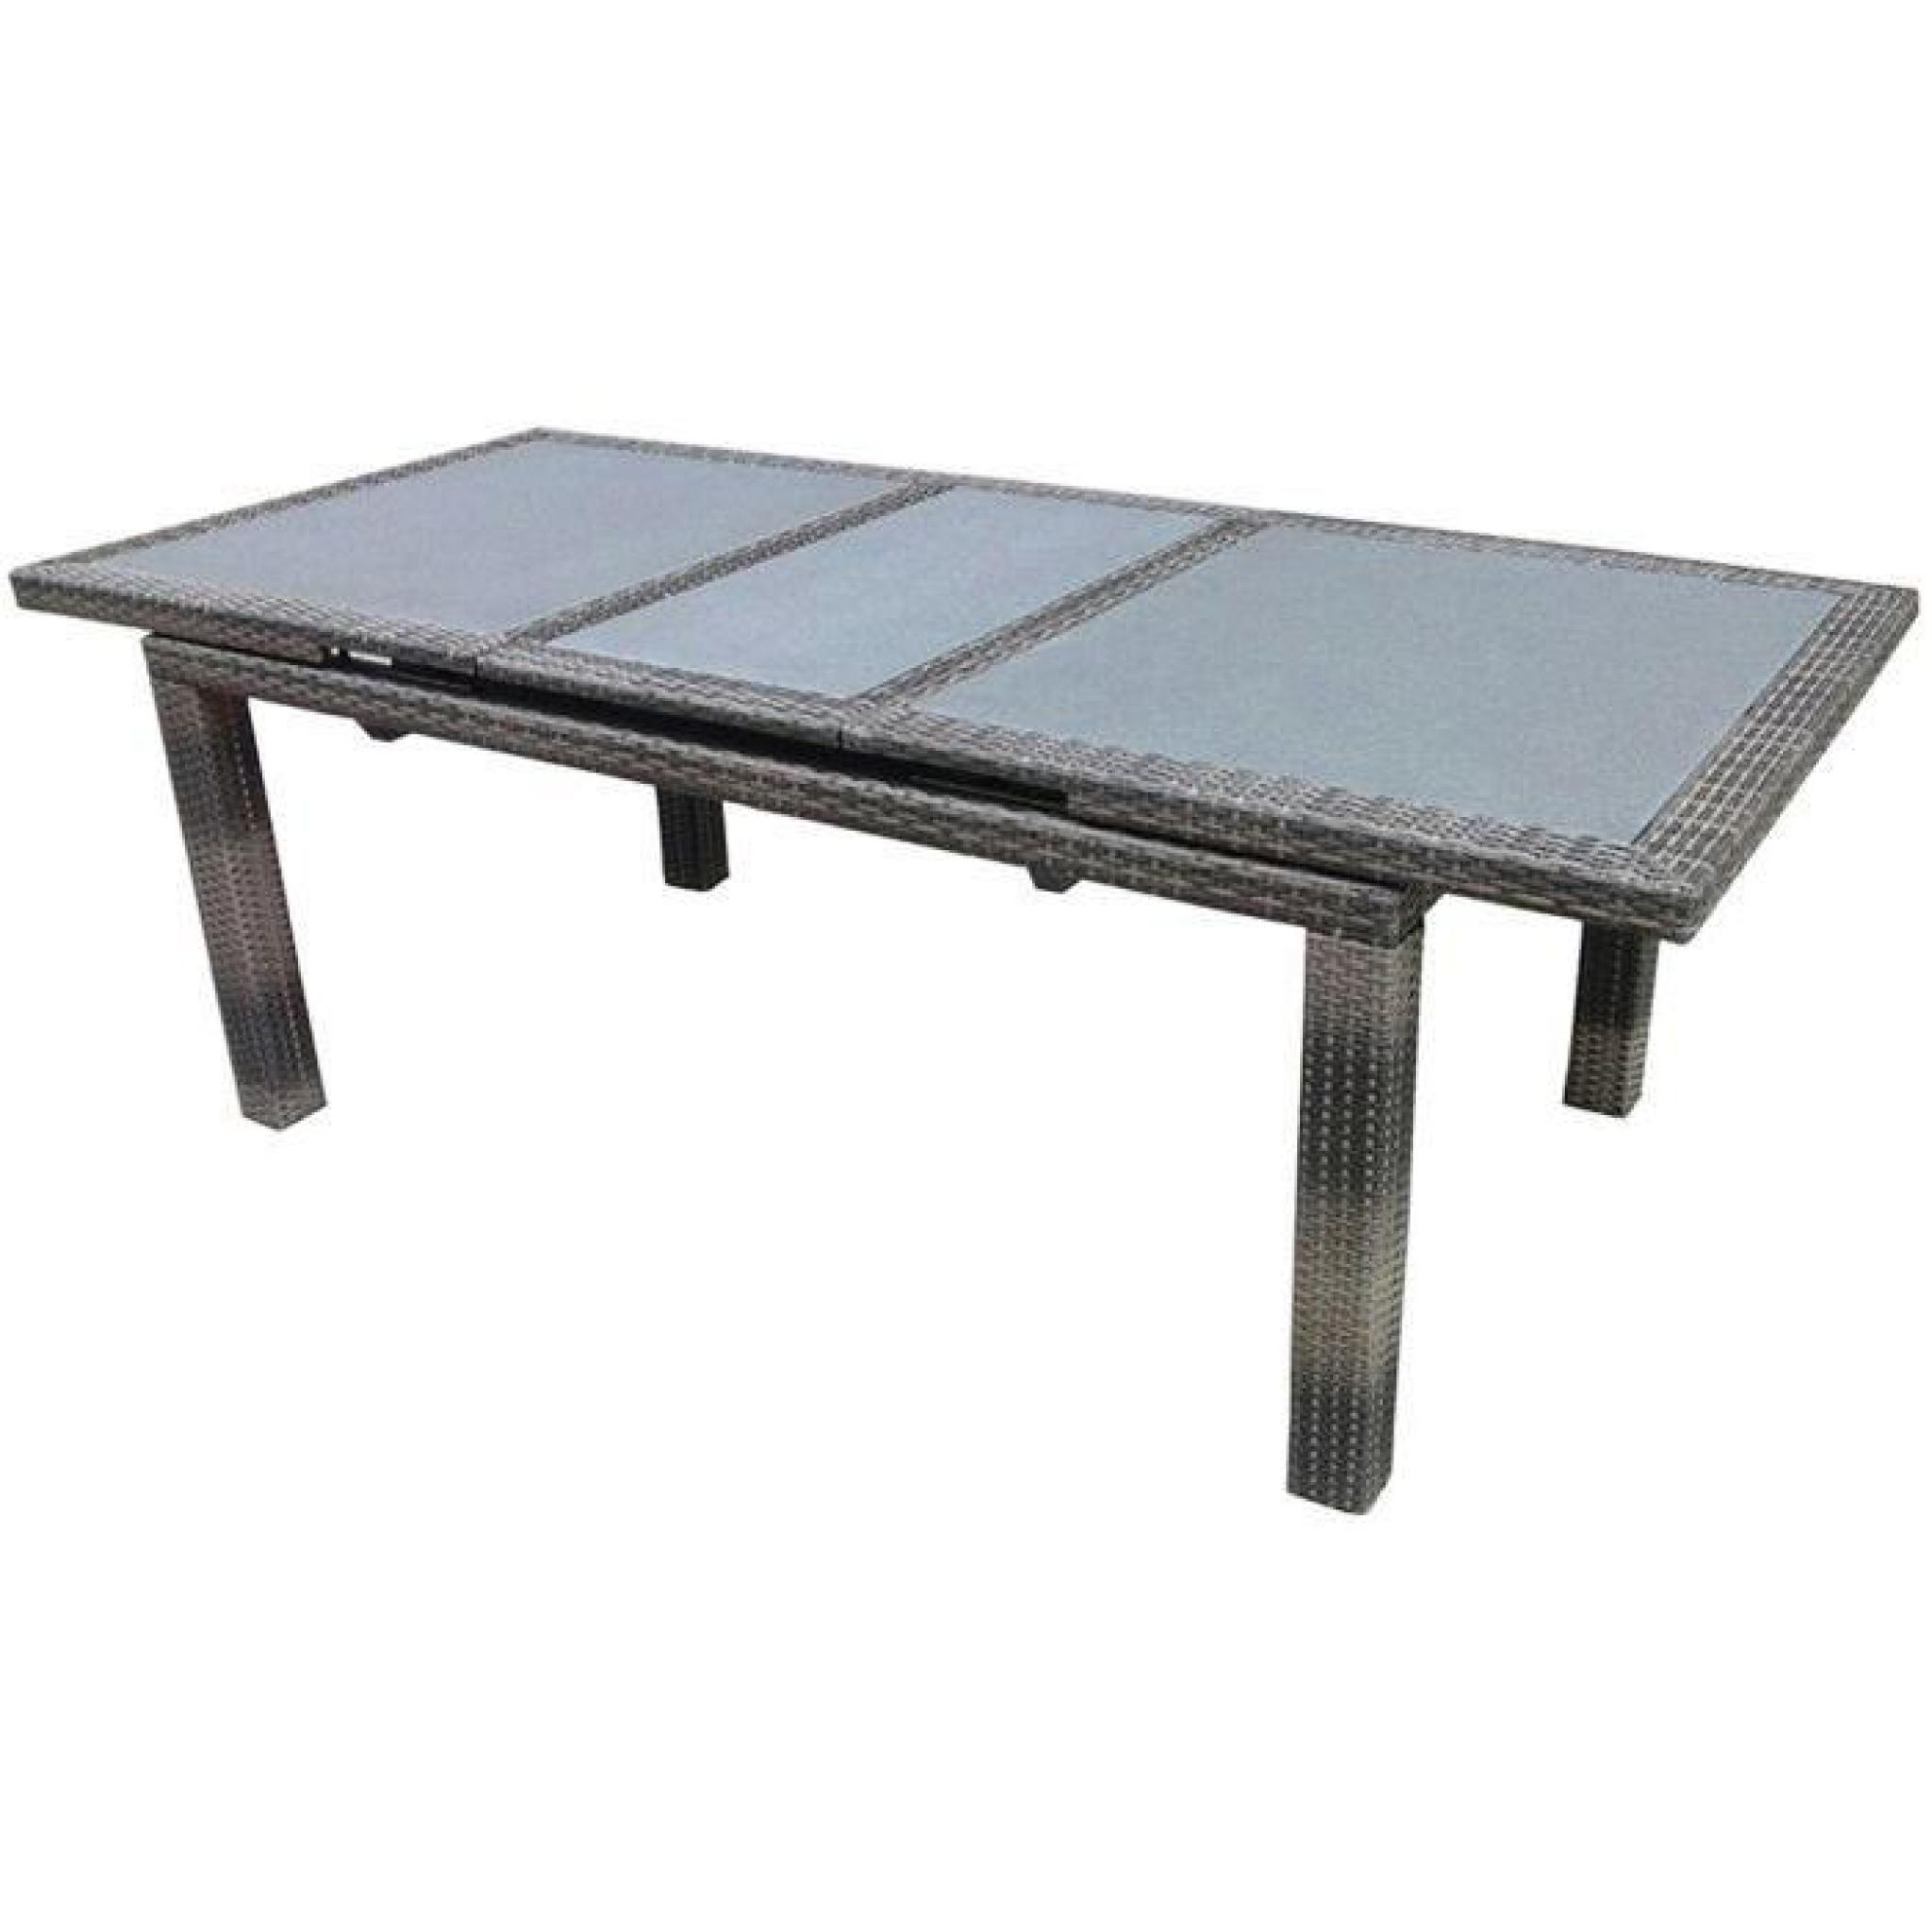 Table extensible en Tressage Wicker plat 7mm coloris havane - Dim : H 77 x L 170-220 x P 100 cm